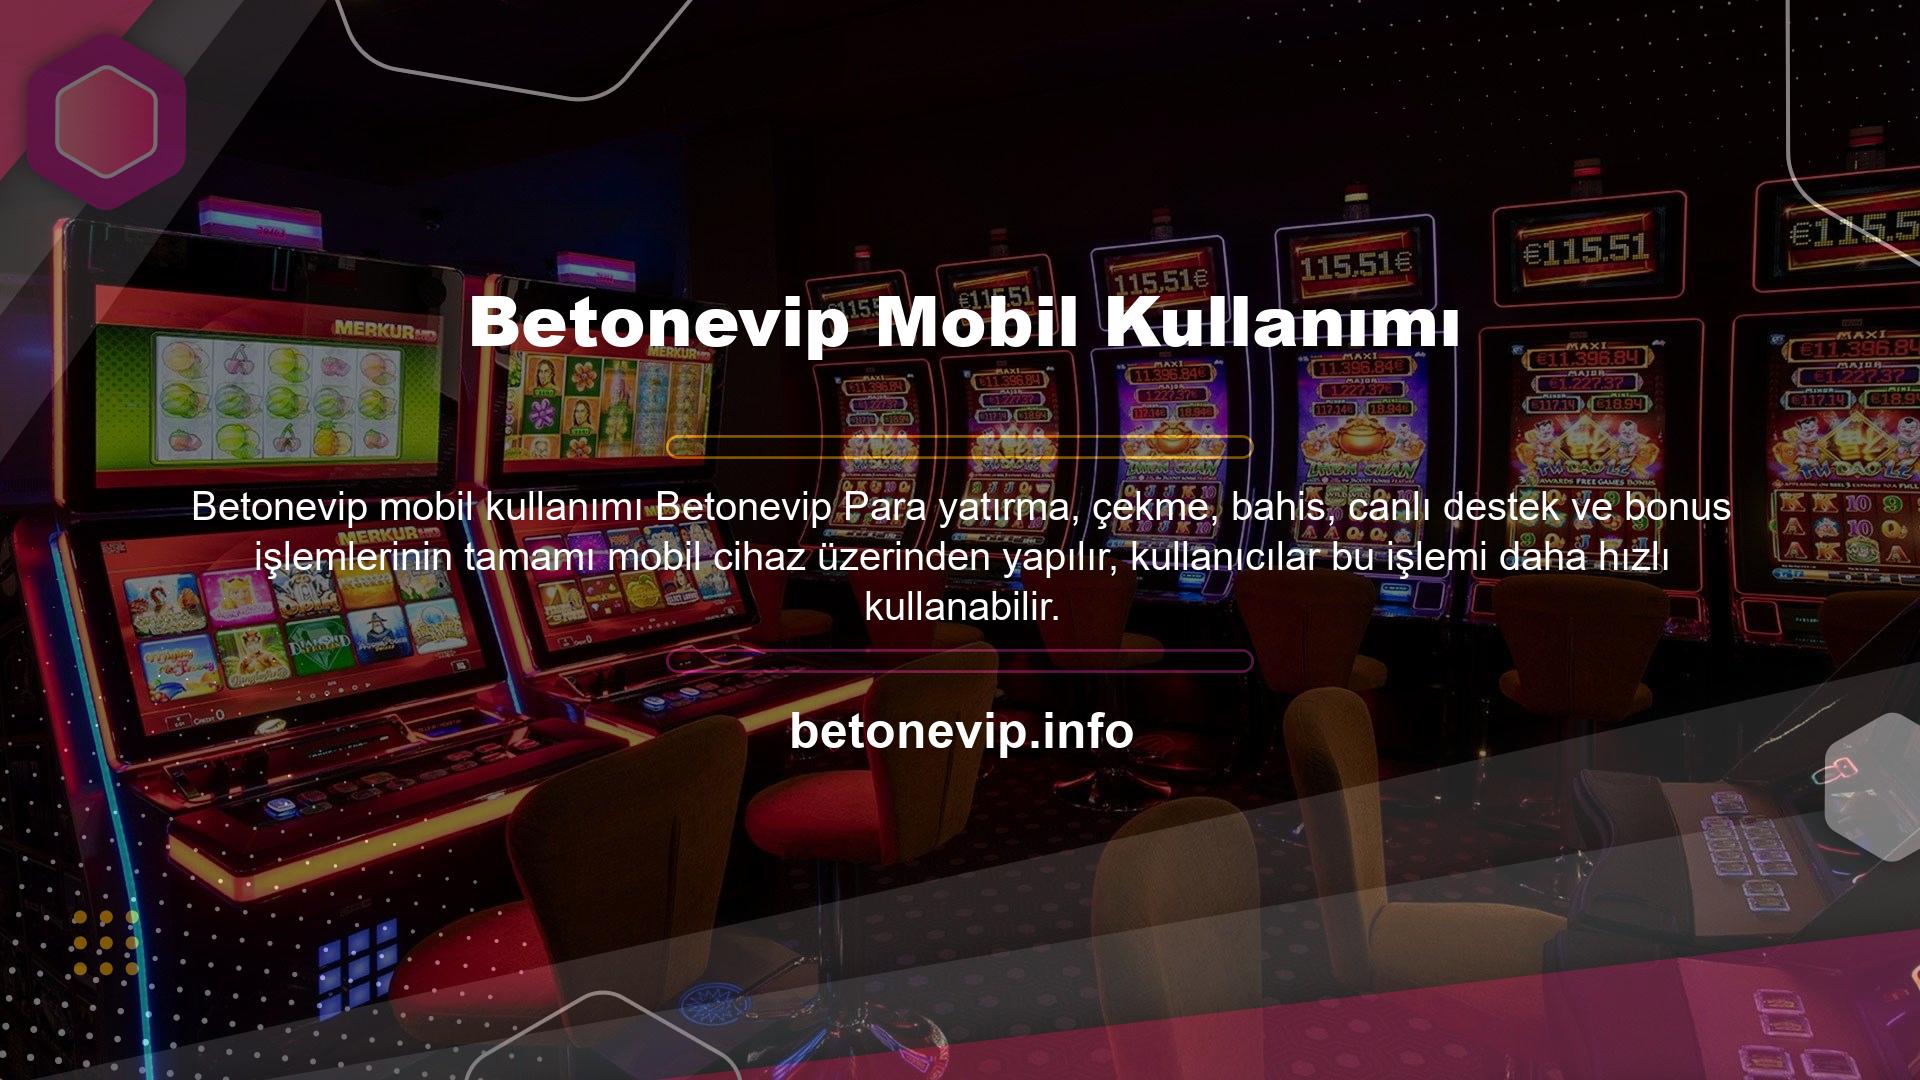 Üyeleri arasında mobil cihazların kullanımının yaygınlaşmasıyla birlikte Betonevip, en kaliteli firmalar tarafından üretilen, çok girişli program için altyapıya sahiptir